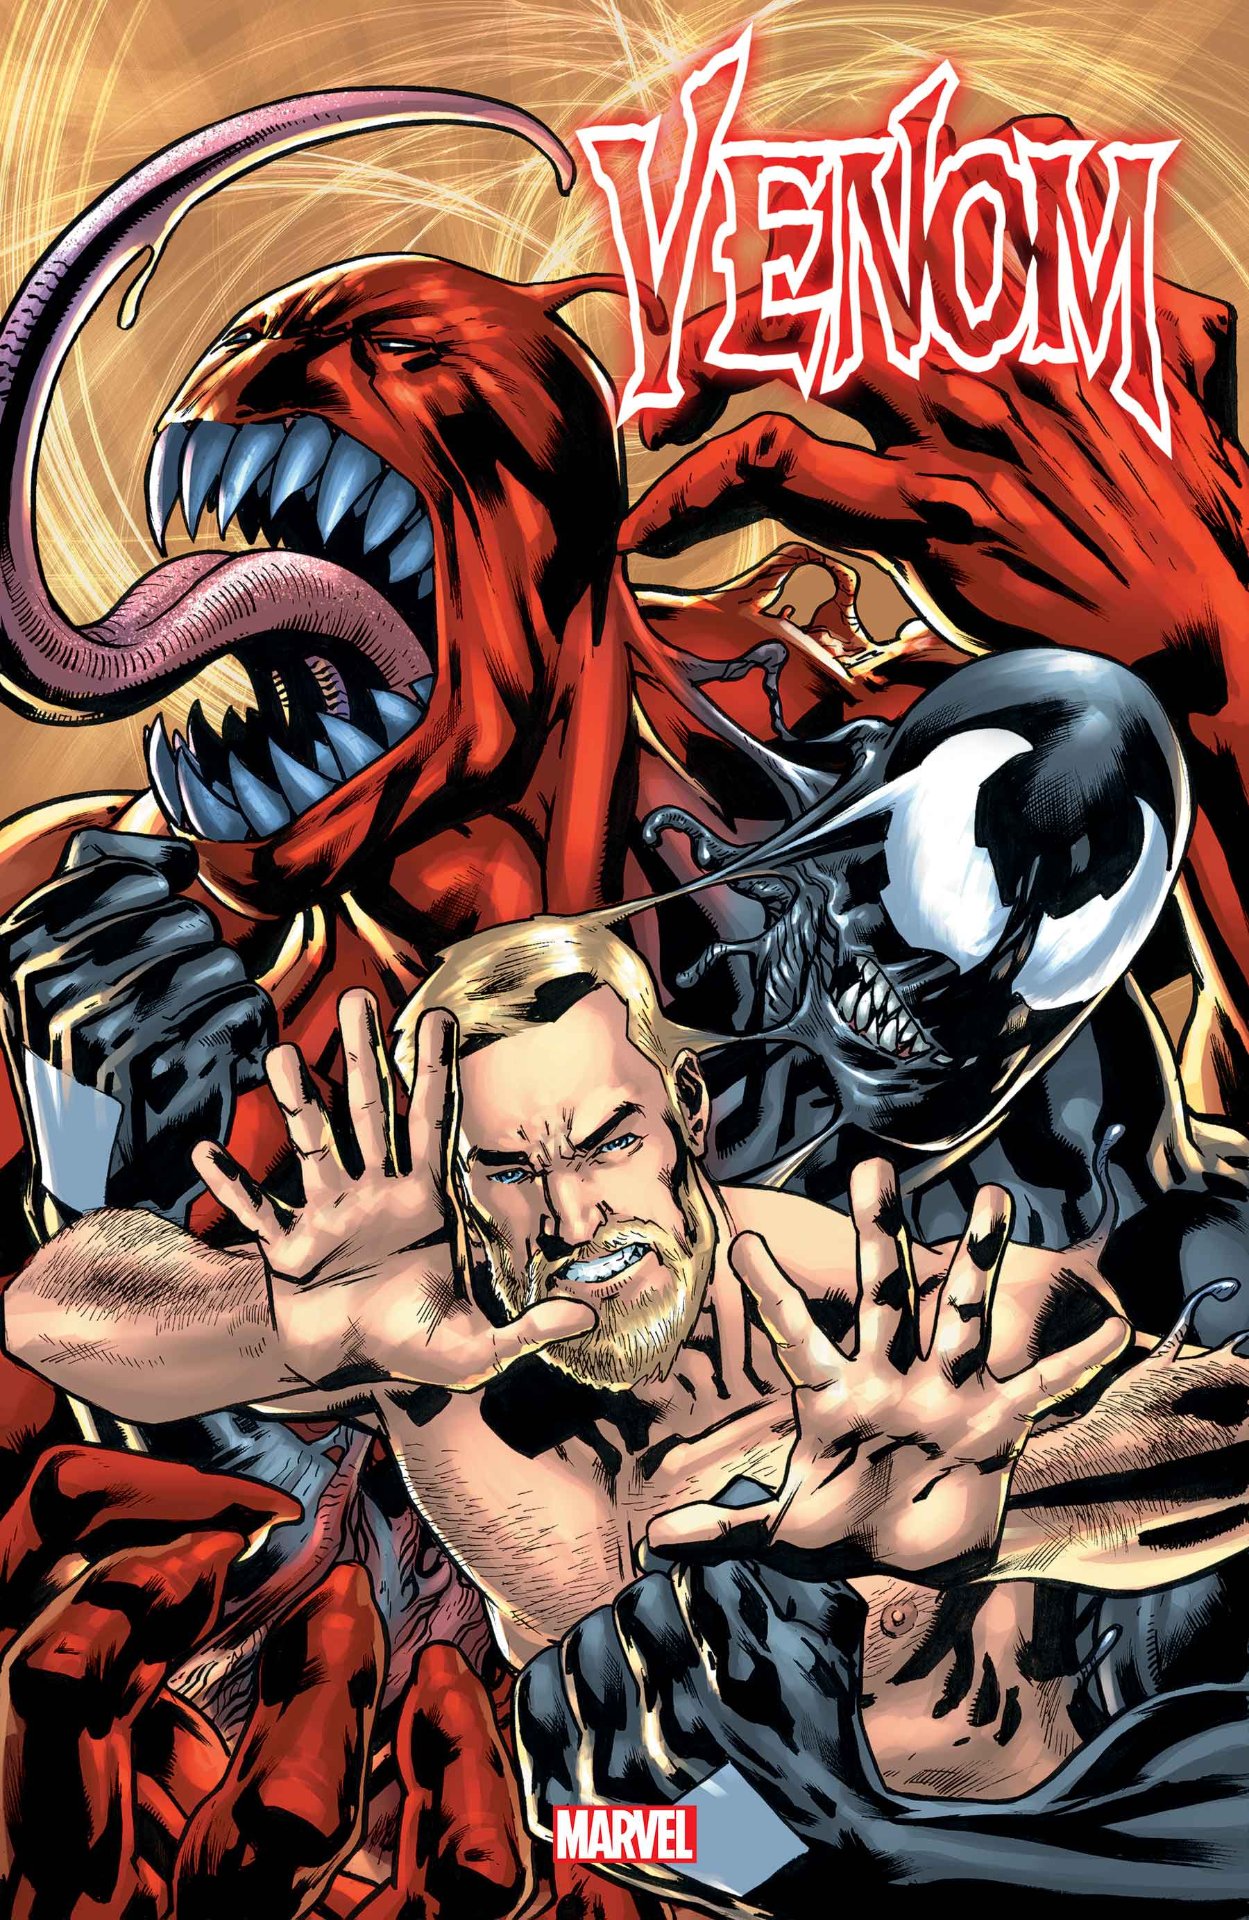 Portada variante de Venom #17 por Bryan Hitch